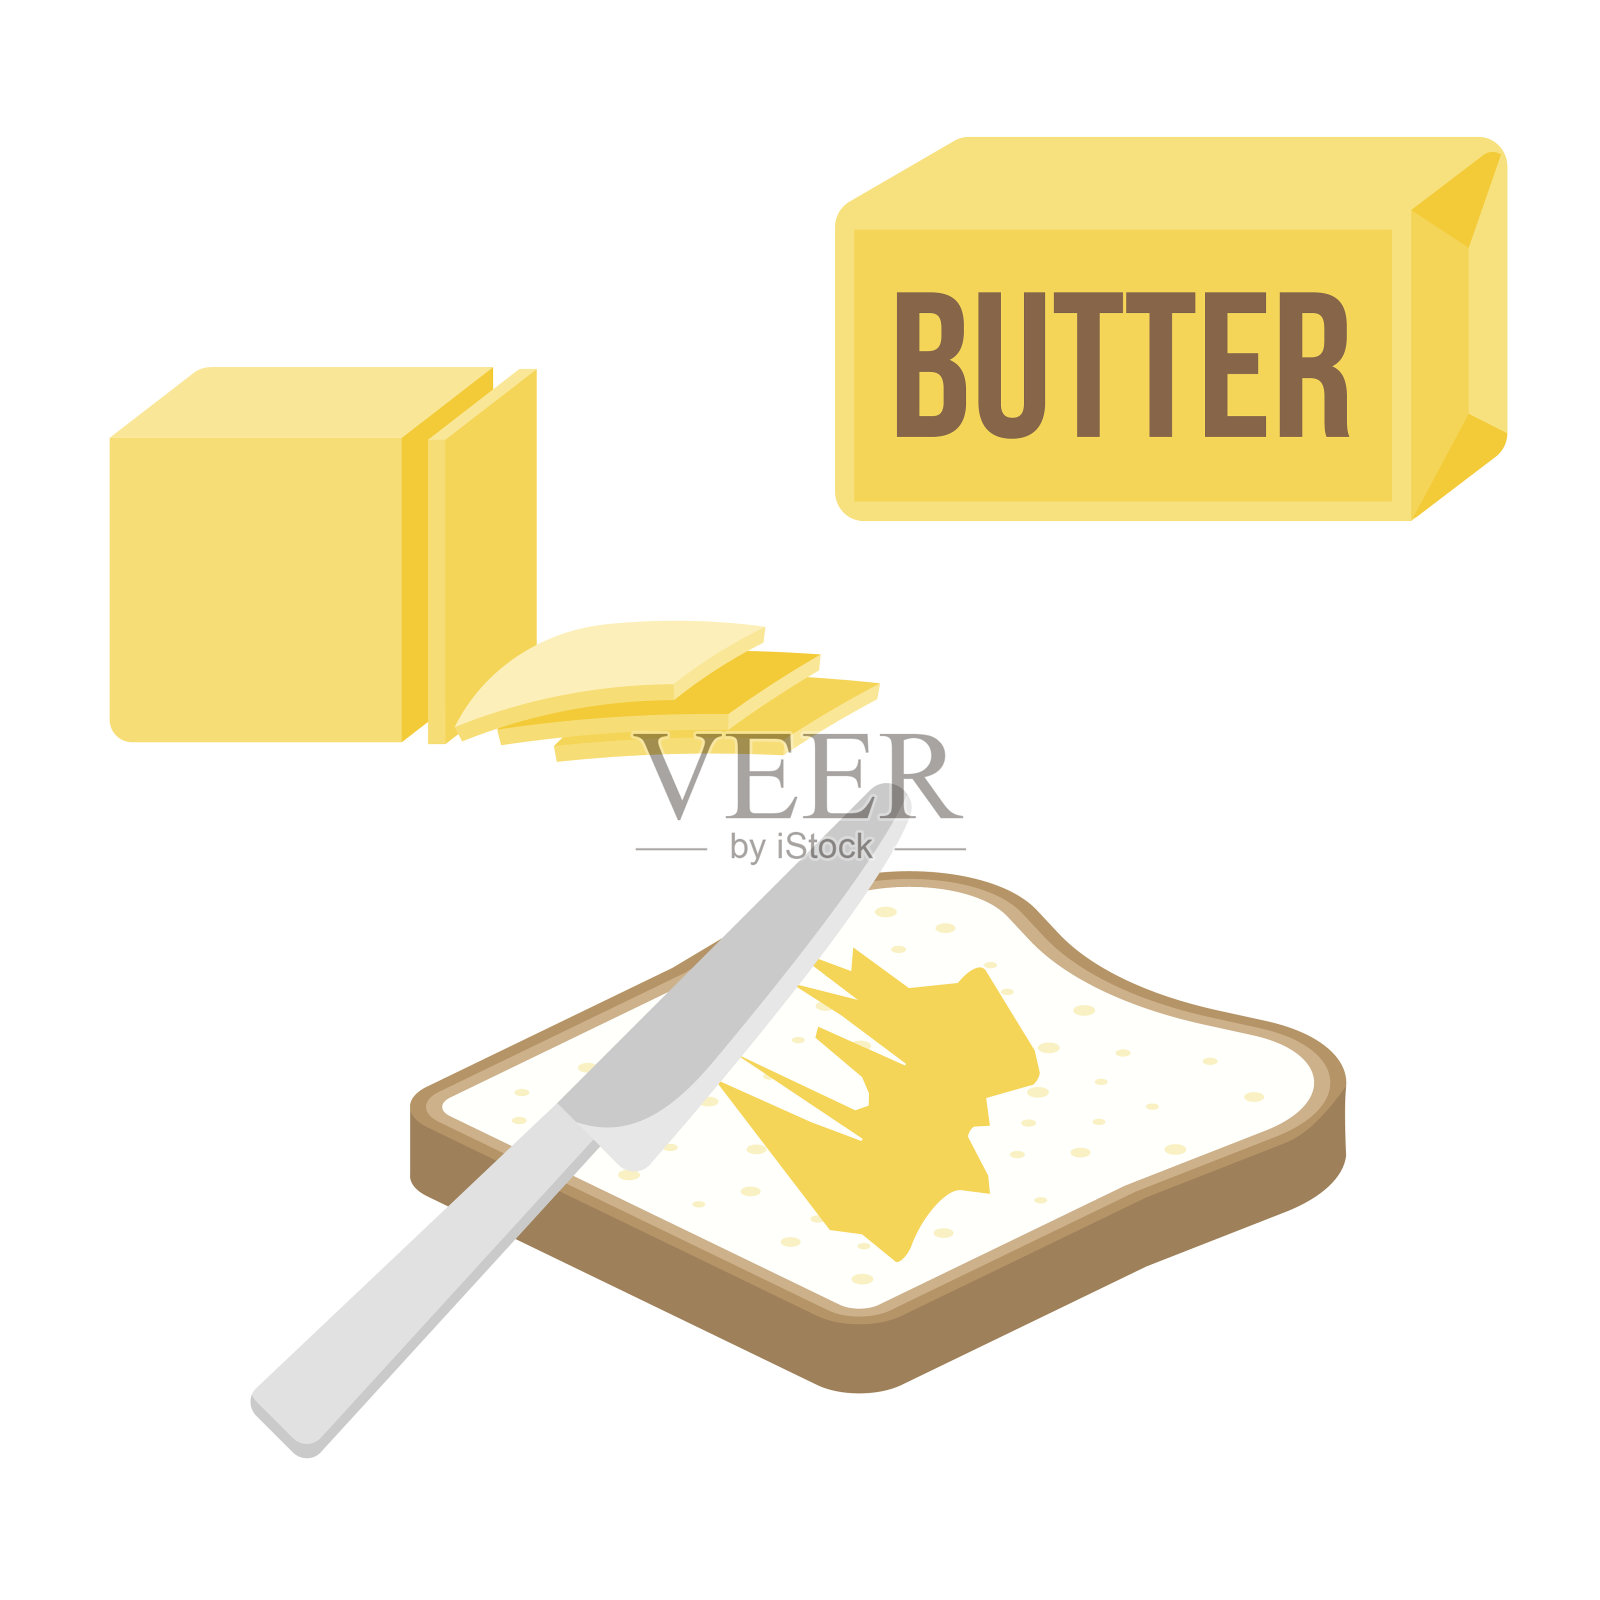 用刀将黄油或人造黄油涂在烤面包片和黄油条上设计元素图片